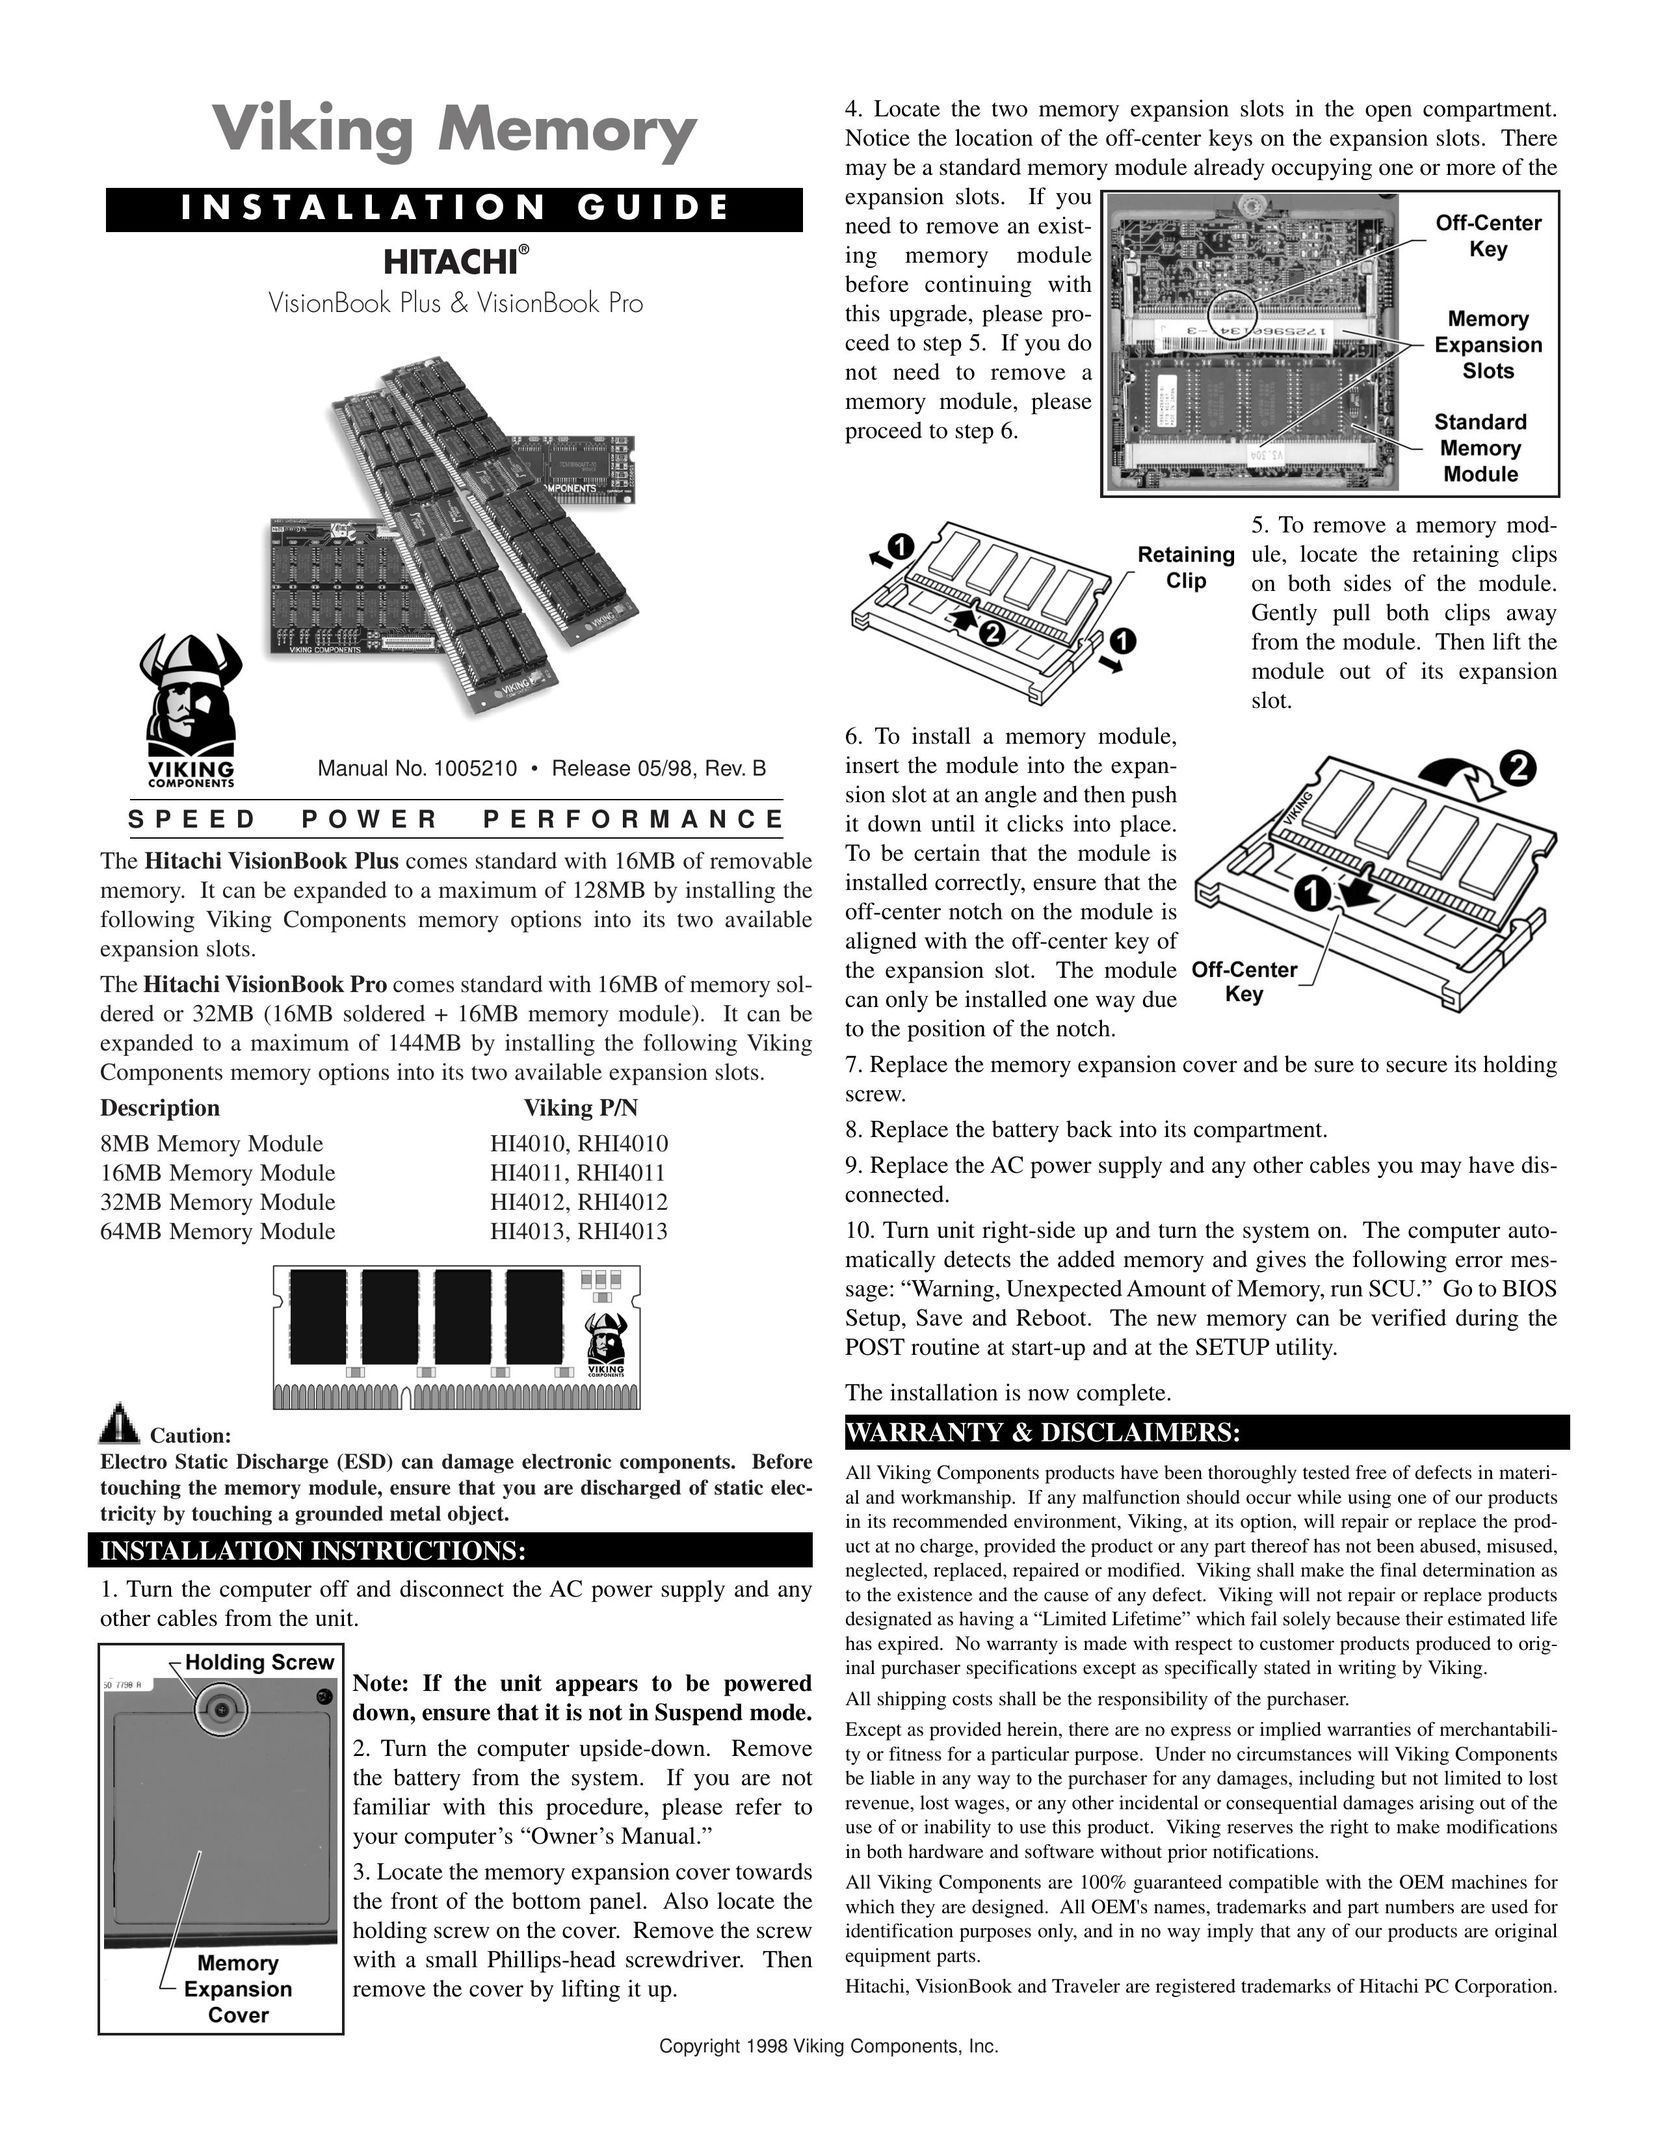 Viking 8MB Memory Module HI4010 Personal Computer User Manual